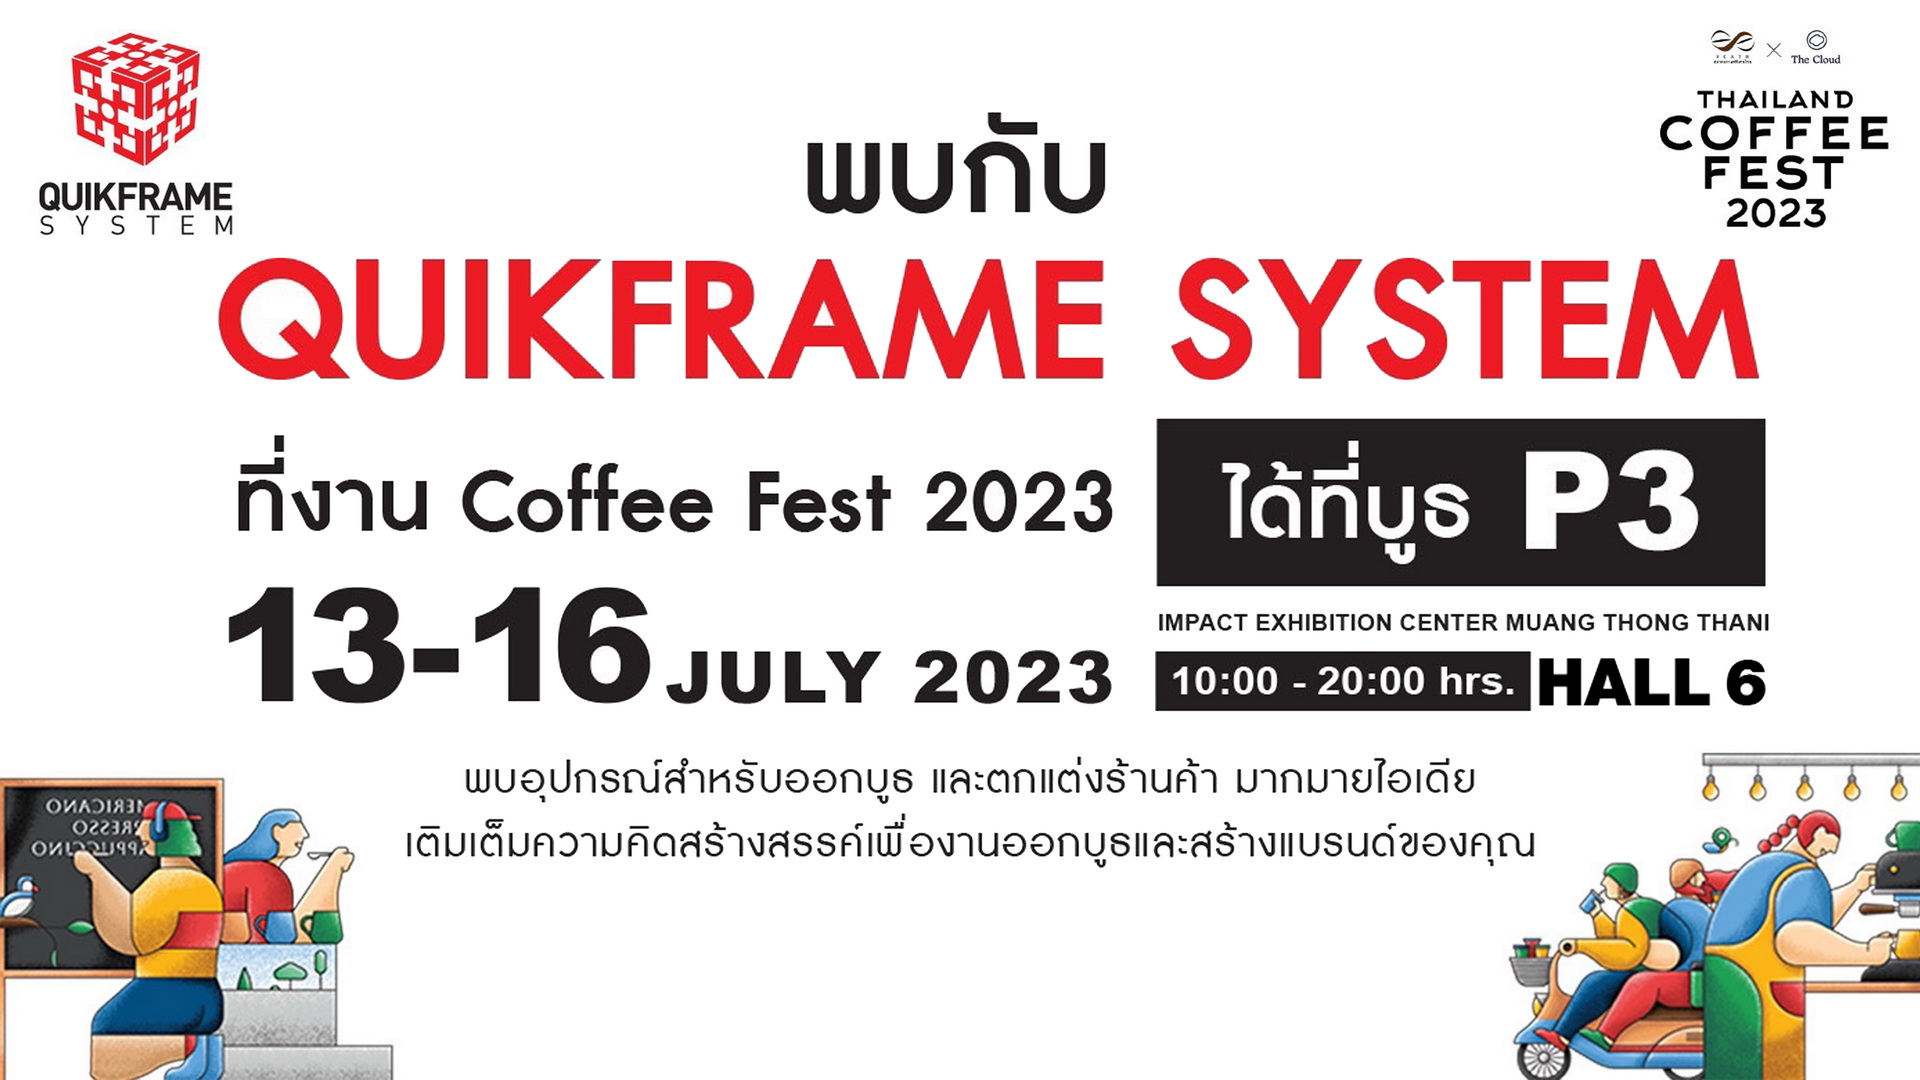 พบกับ Thailand Coffee Fest 2023 บูธ P3 ฮอลล์ 6 อิมแพ็คเมือง ทองธานี13 - 16 ก.ค. 66